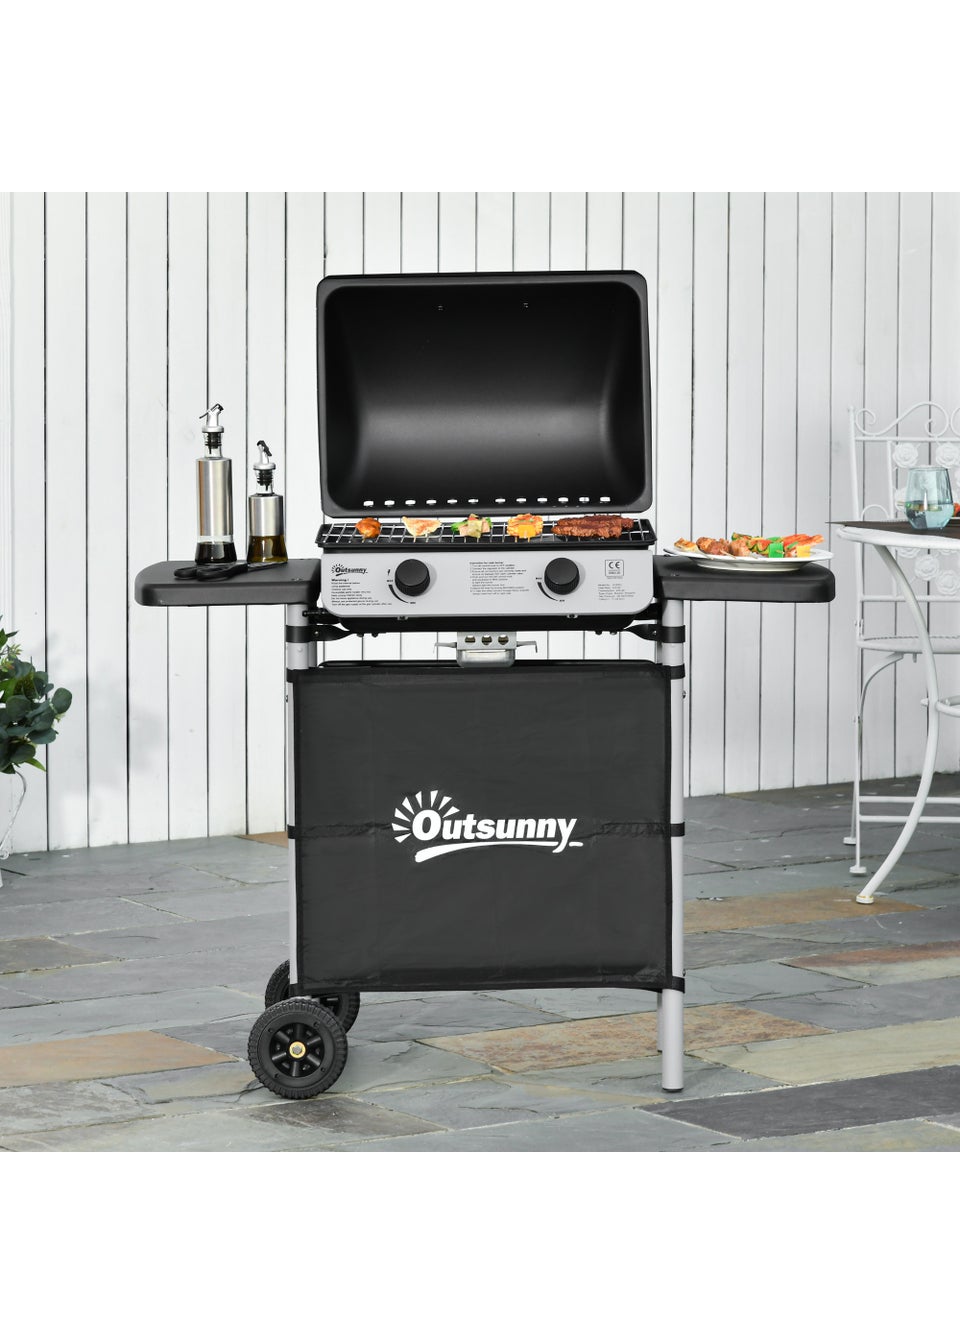 Outsunny Black Gas Barbecue Grill (99cm x 49cm x 104cm)